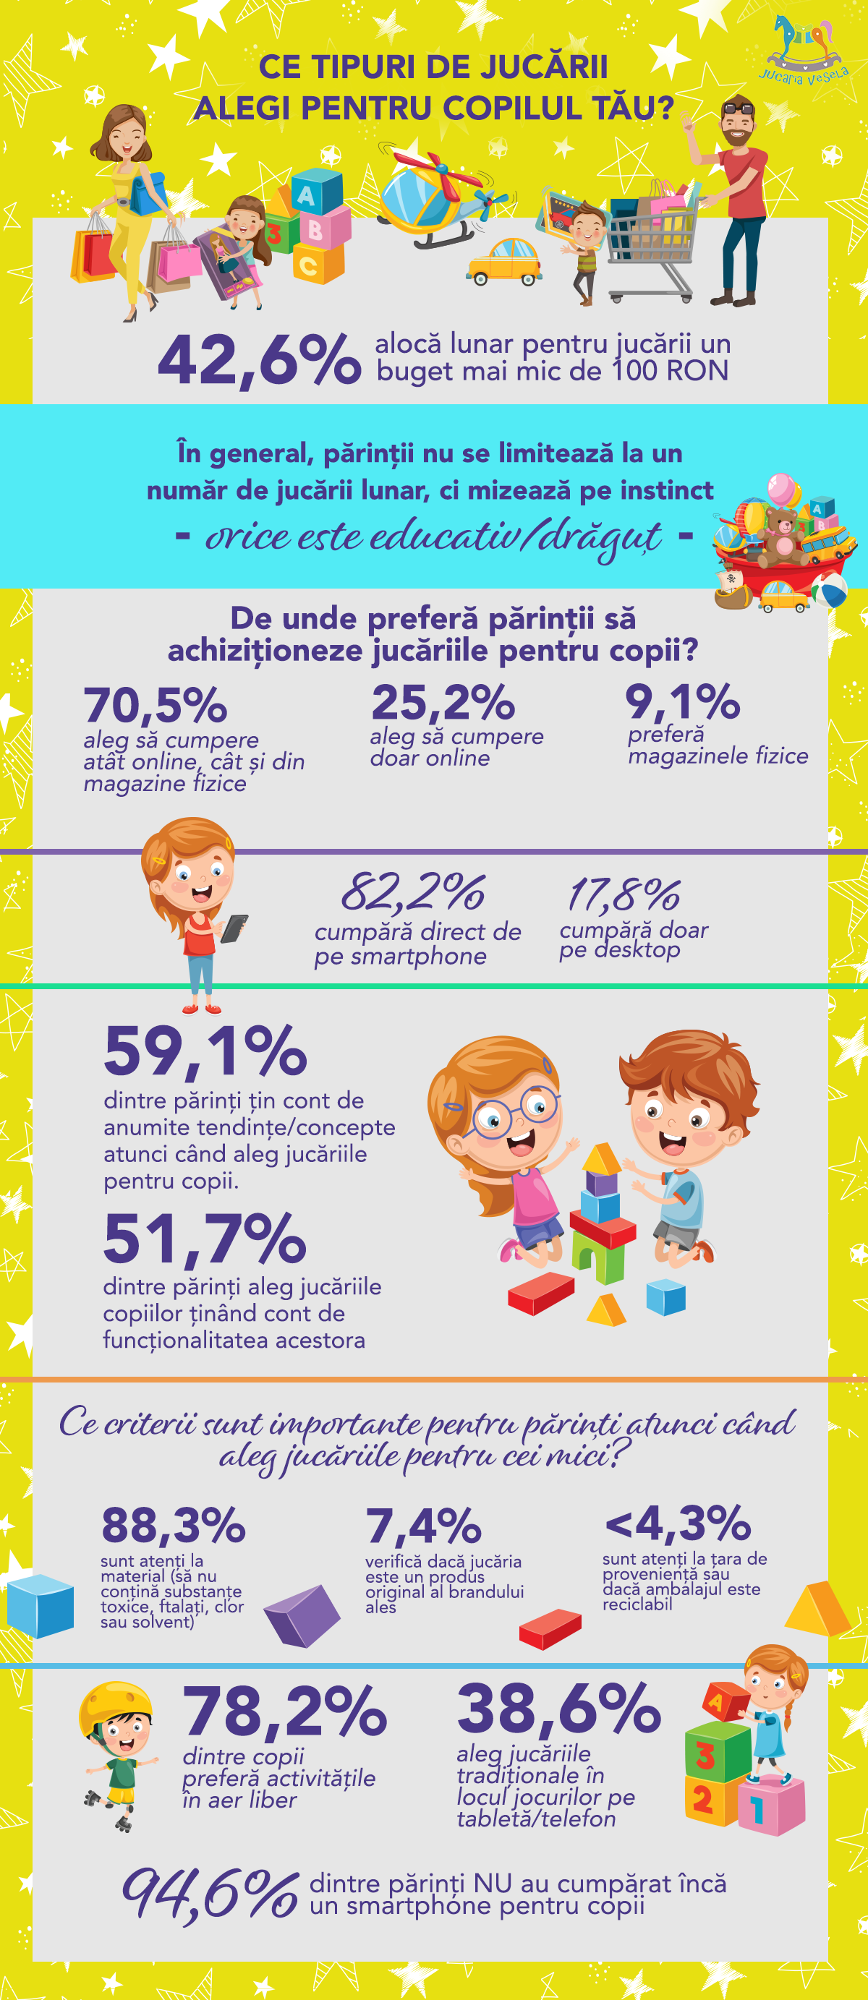 JucariaVesela.ro: Părinții români cheltuiesc sub 100 RON lunar pe jucăriile copiilor, dar le preferă pe cele educative de tip Montessori sau Waldorf